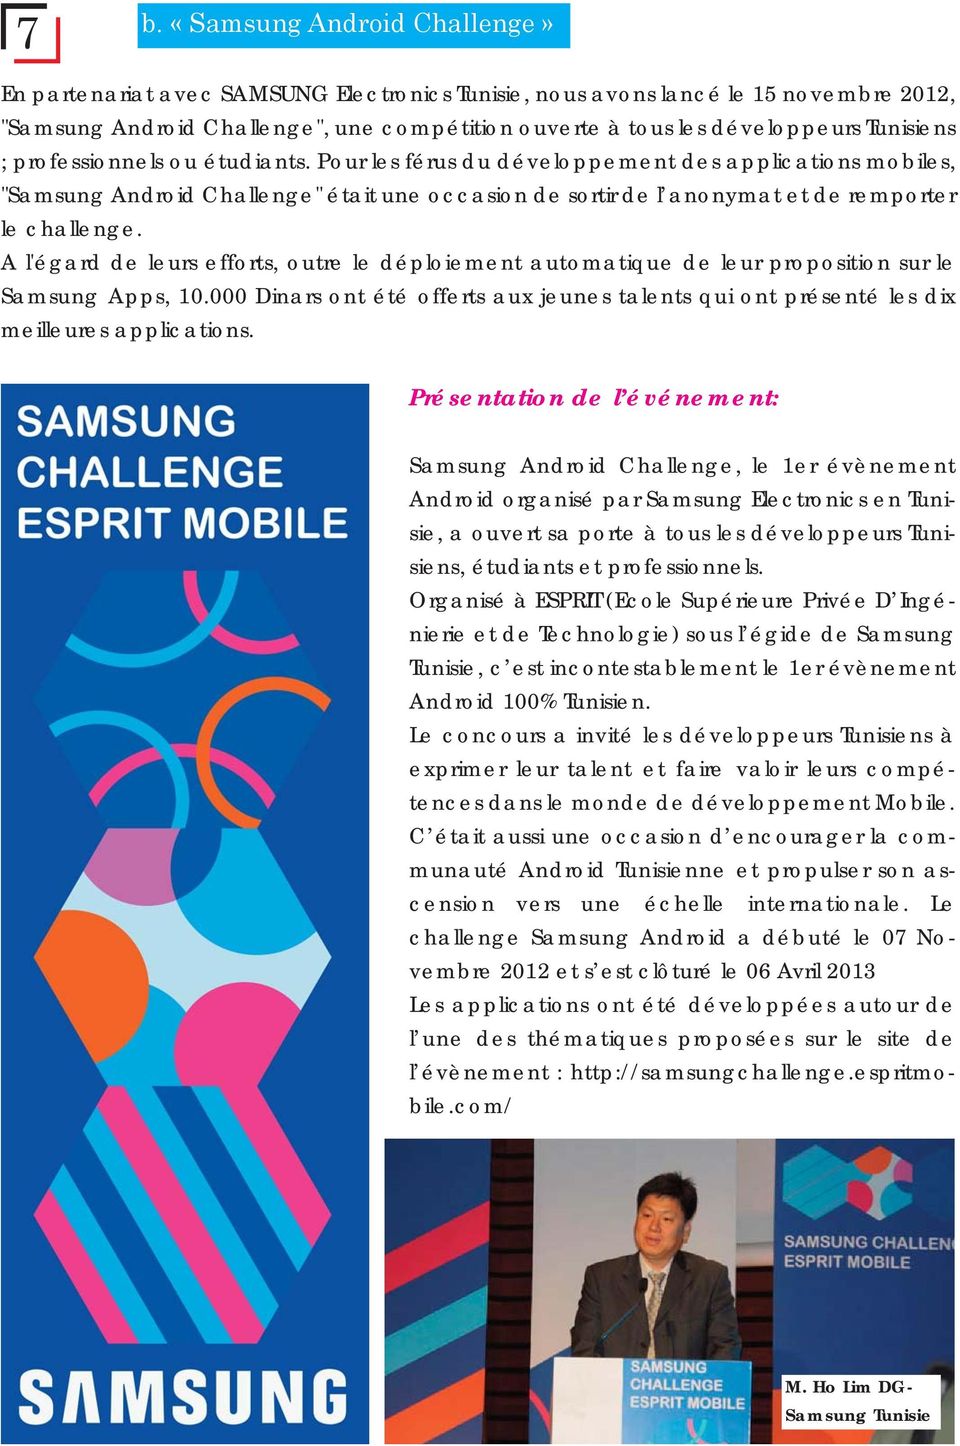 A l'égard de leurs efforts, outre le déploiement automatique de leur proposition sur le Samsung Apps, 10.000 Dinars ont été offerts aux jeunes talents qui ont présenté les dix meilleures applications.